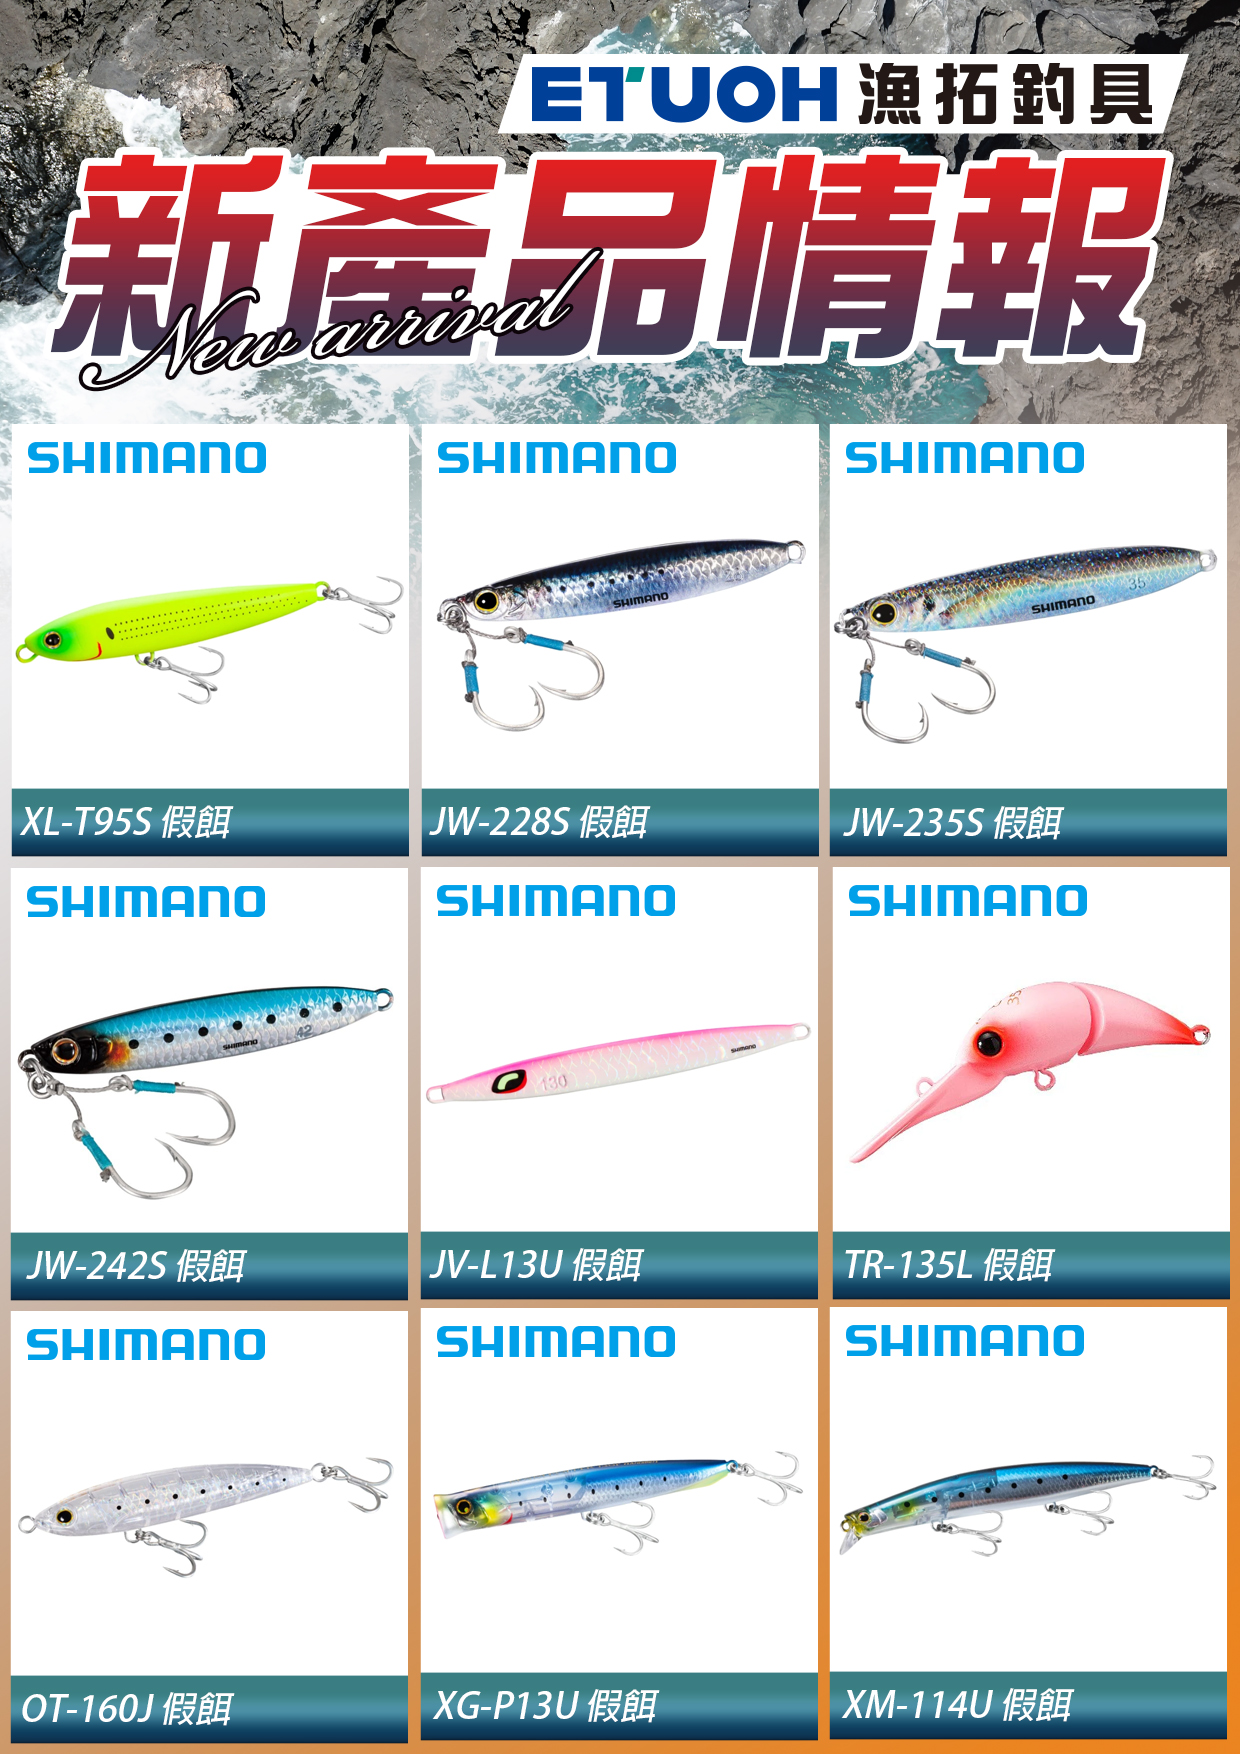 新產品情報SHIMANO-2